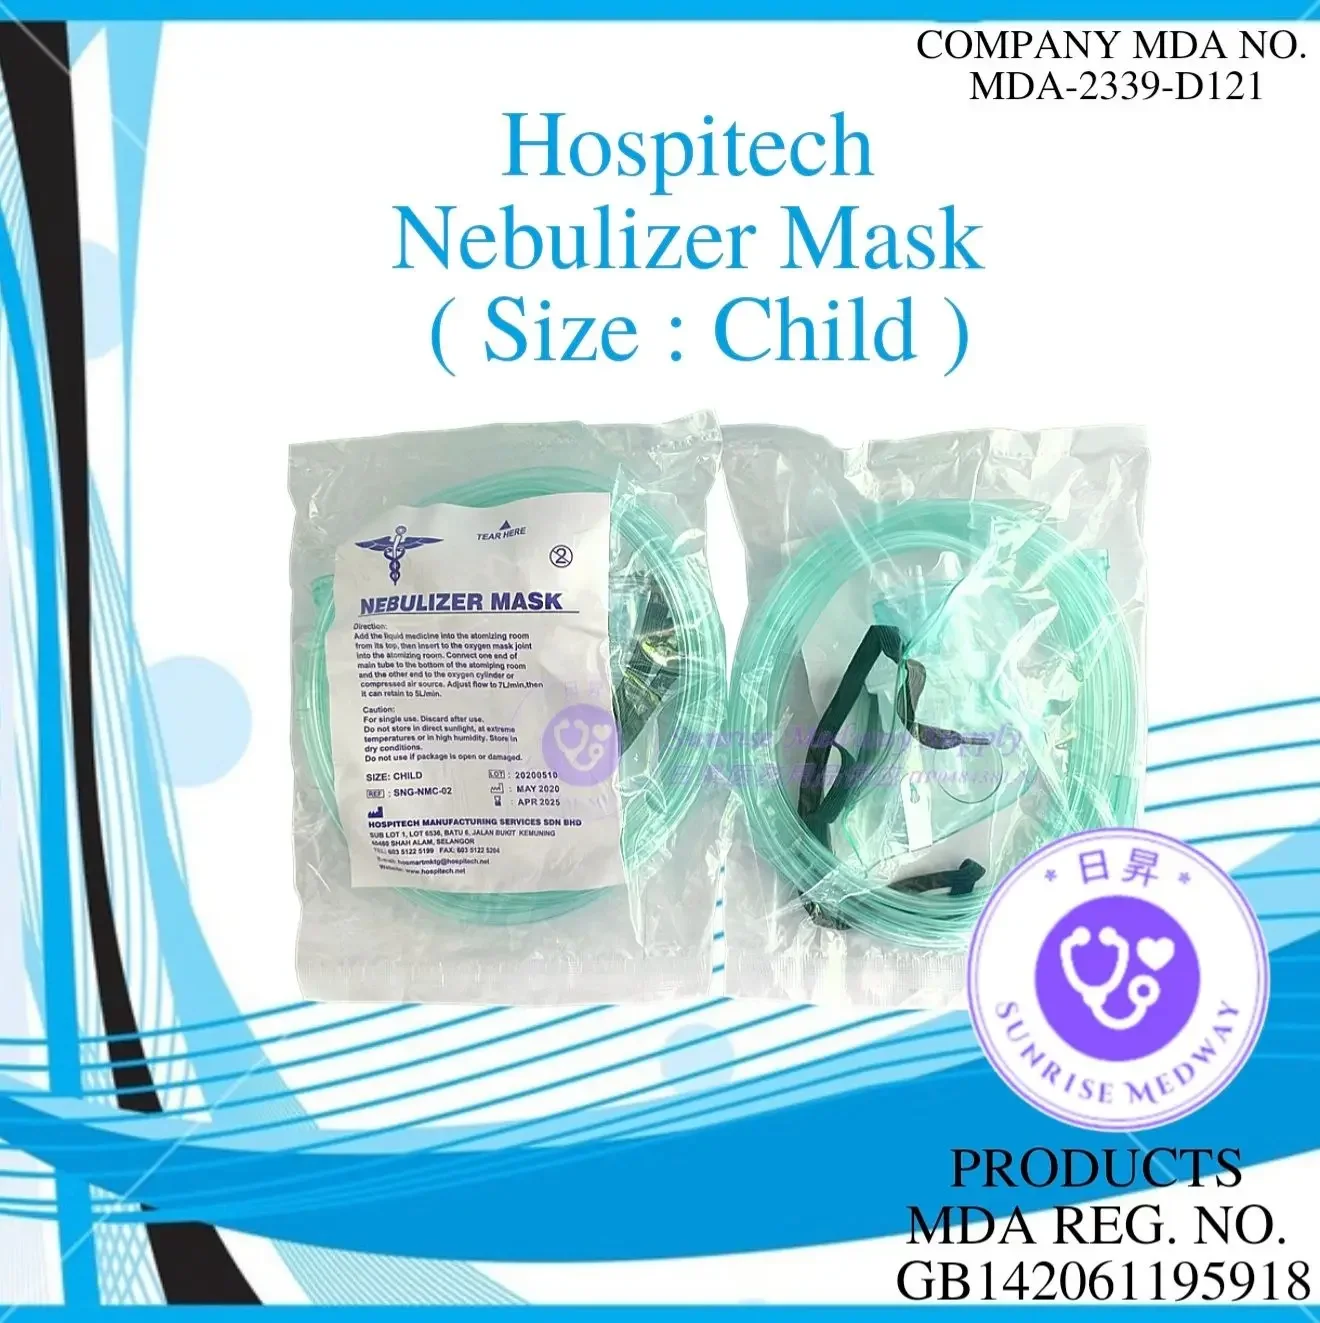 Hospitech Nebulizer Mask, Child, 1 pc/pkt